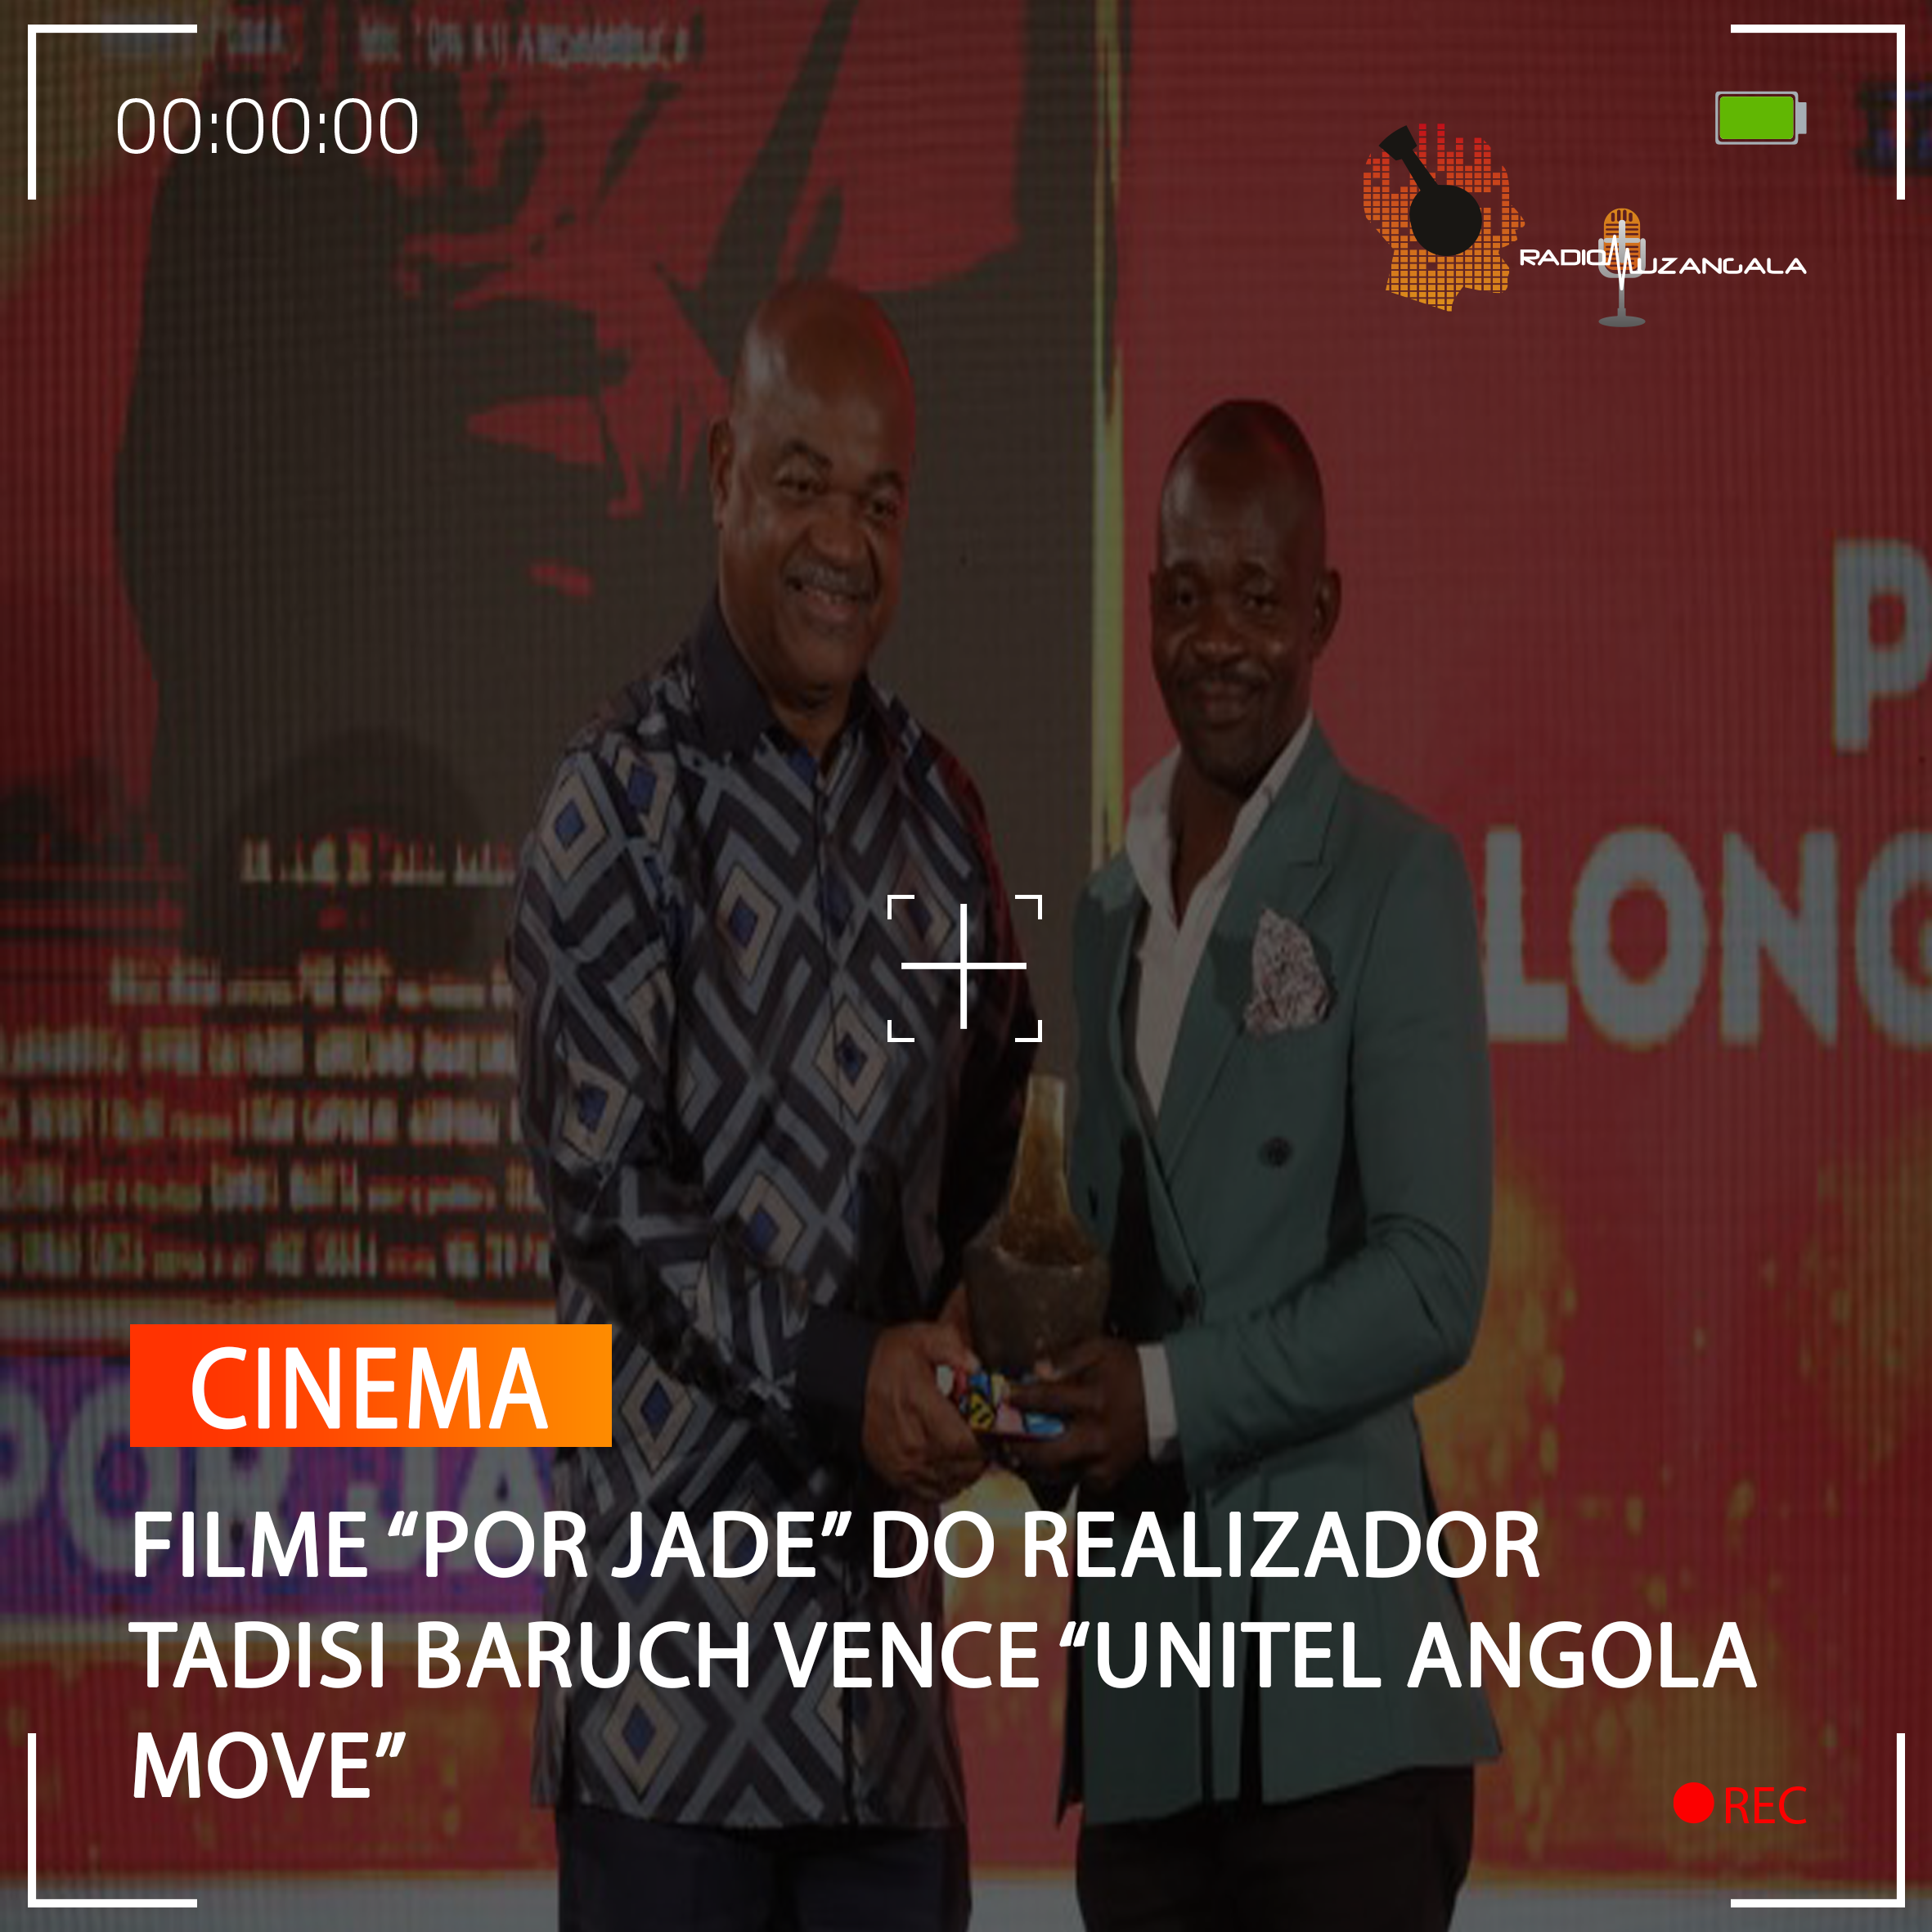  FILME “POR JADE” DO REALIZADOR TADISI BARUCH VENCE “UNITEL ANGOLA MOVE”